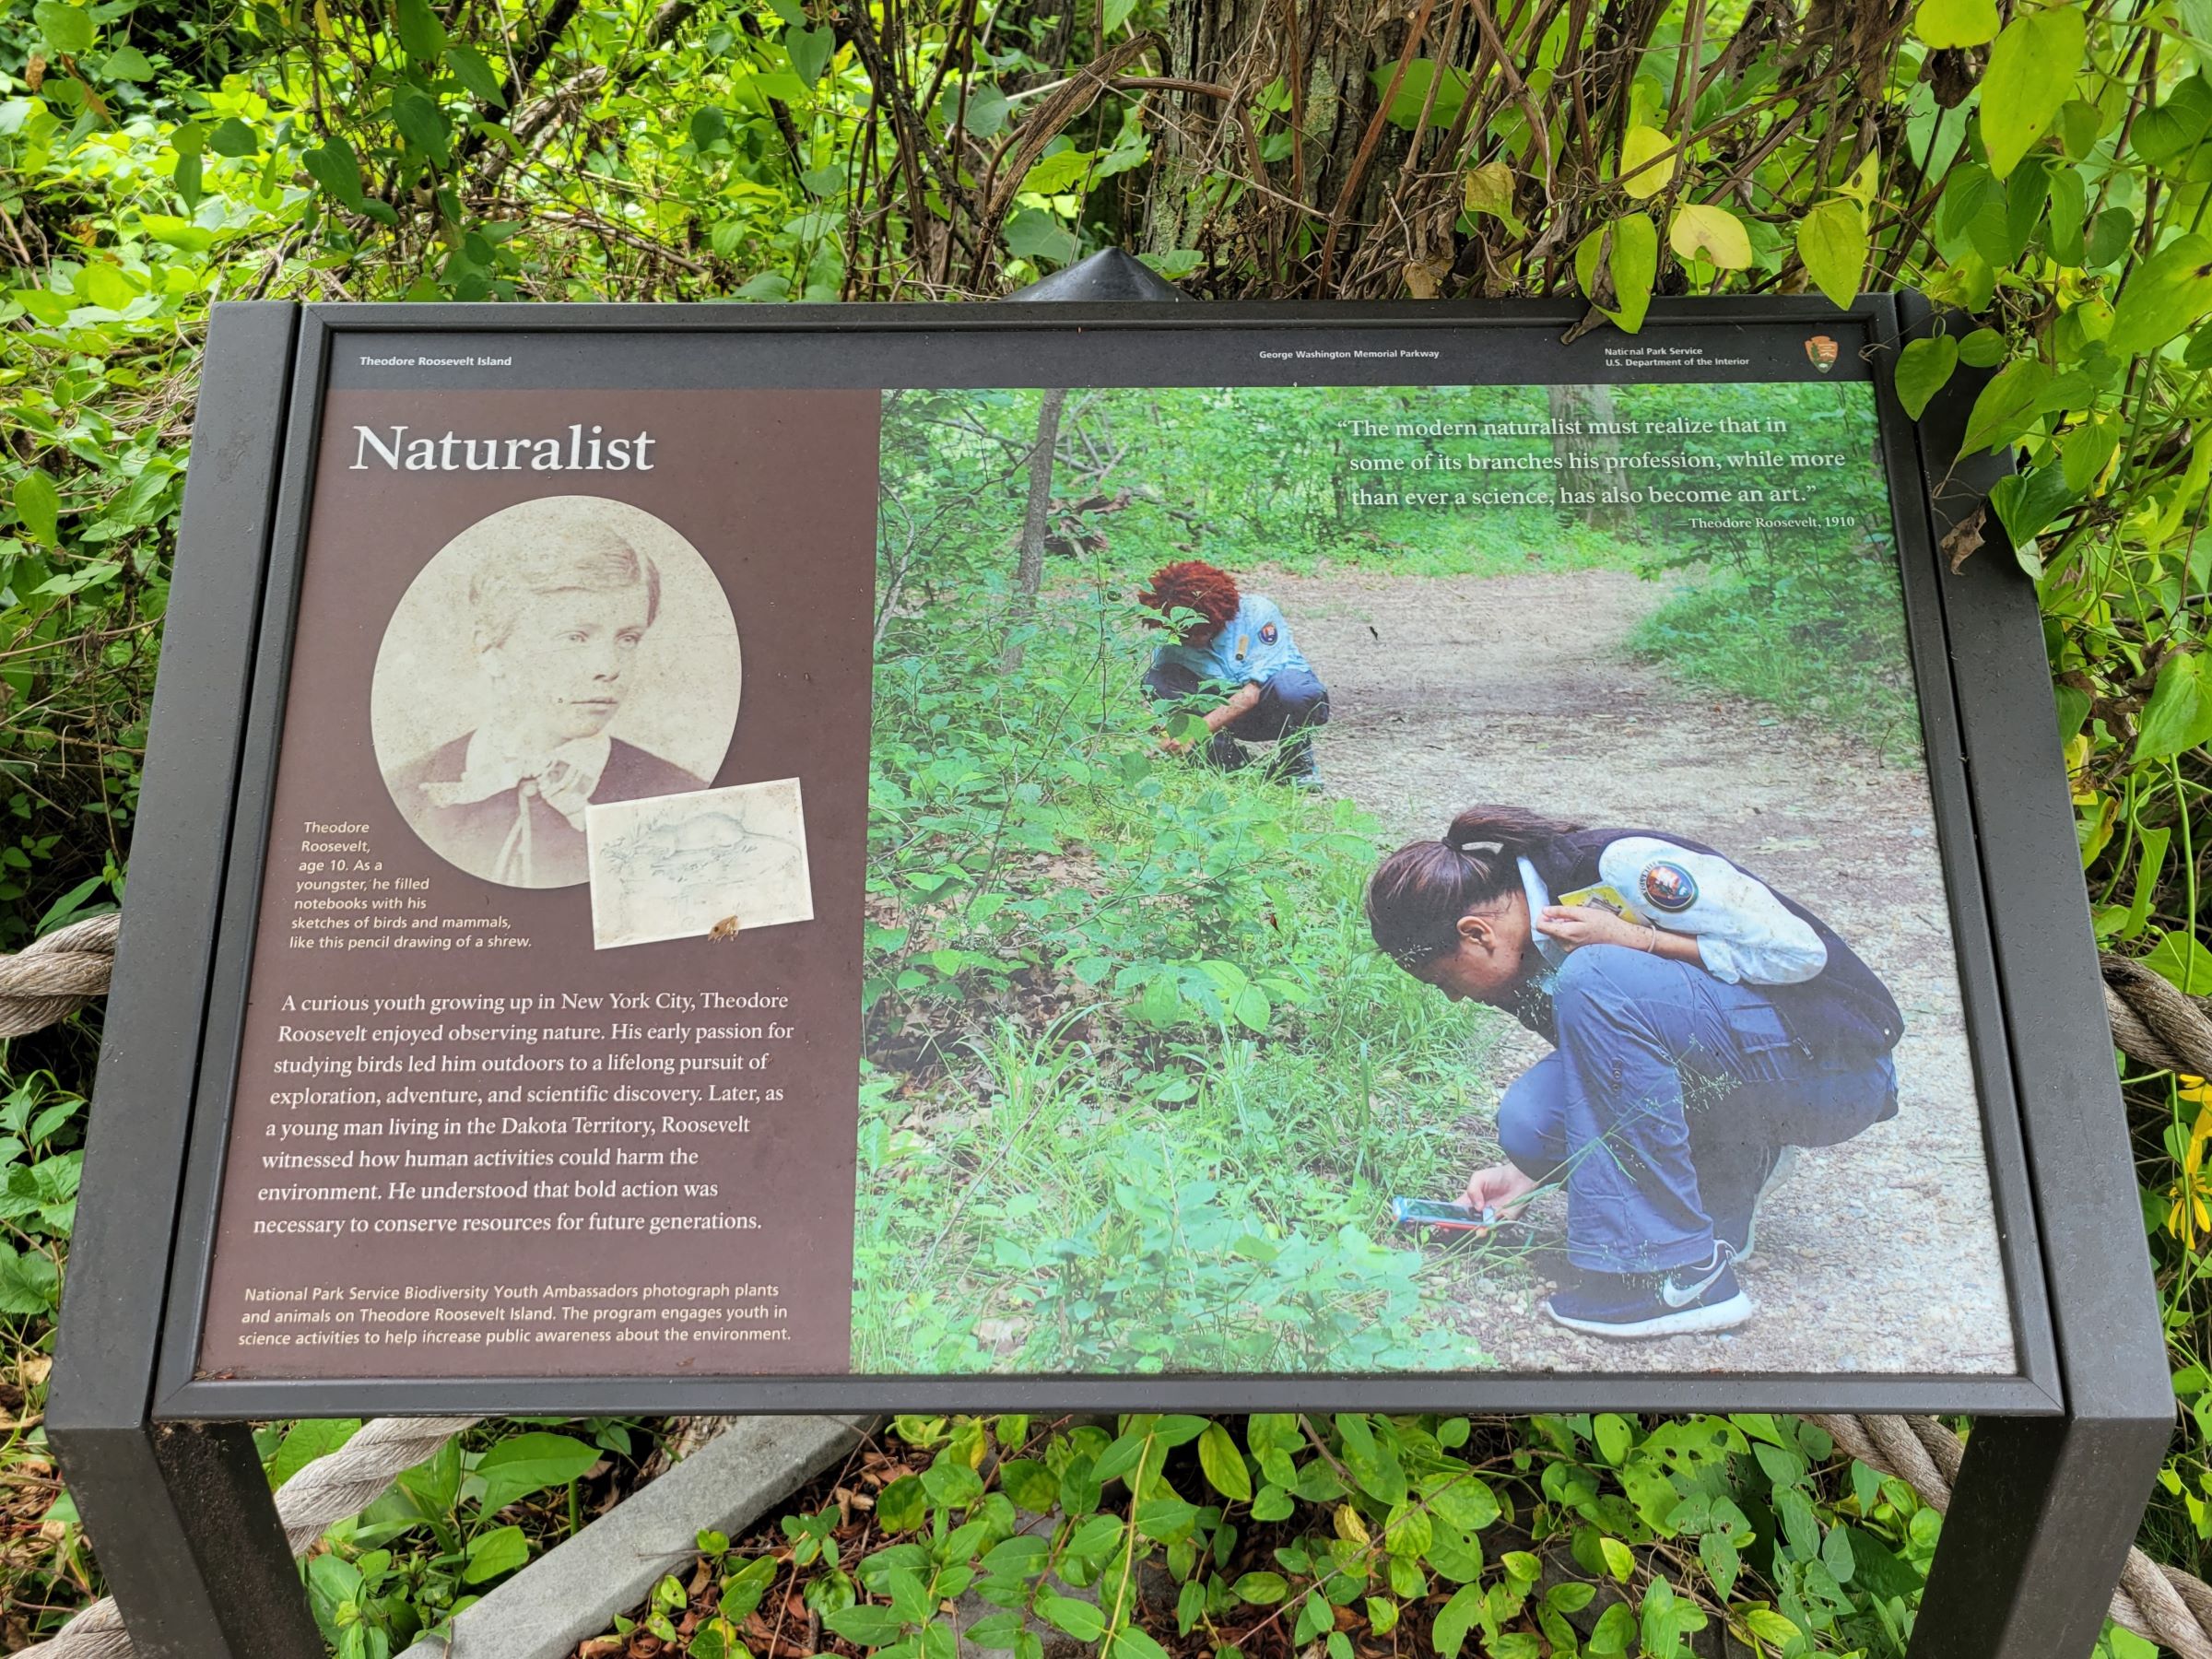 자연보호에 기여한 대통령을 기리는 국가기념물인 시어도어루즈벨트 섬(Theodore Roosevelt Island)